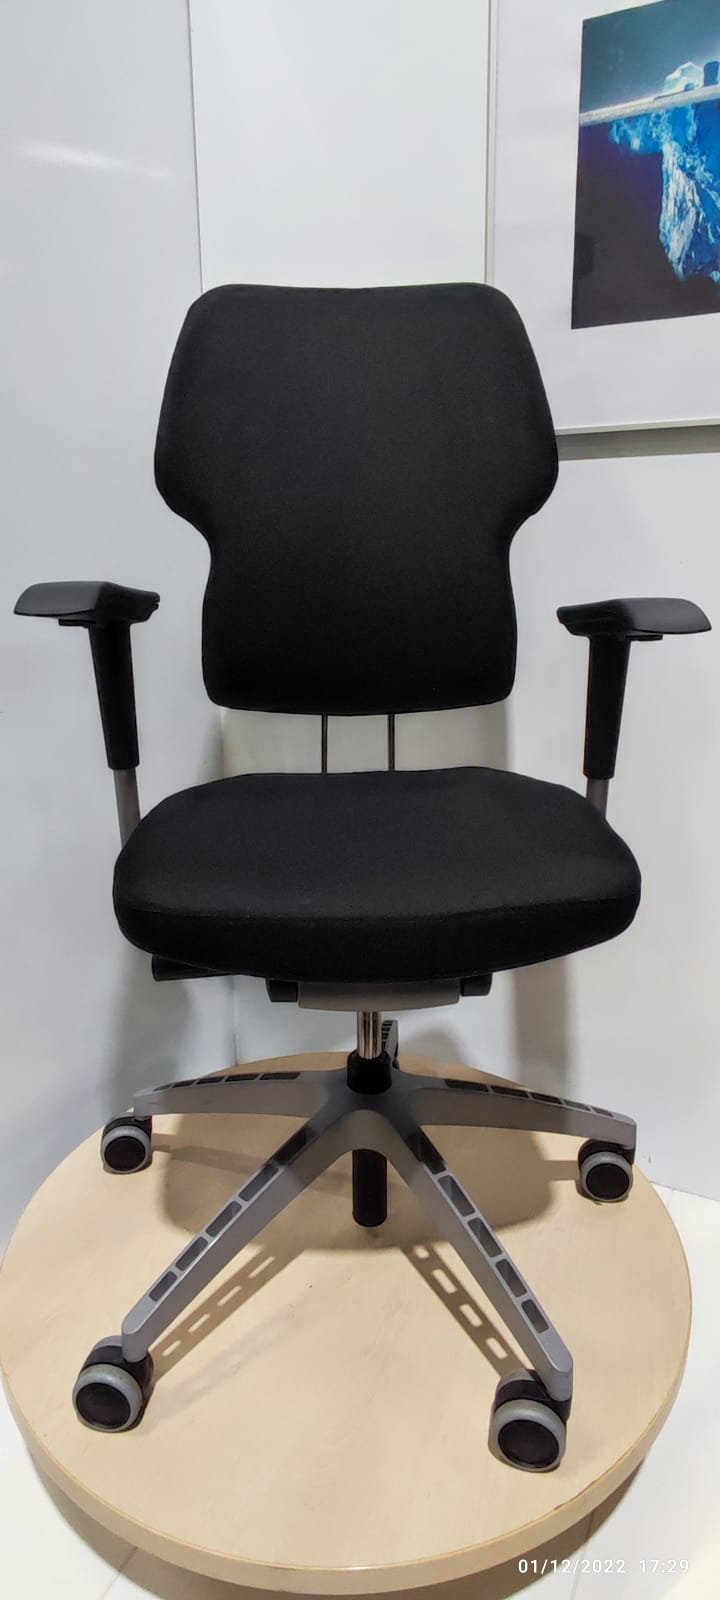 Ikea Klappe – Ergonomic chair, ST01750 – My Storage